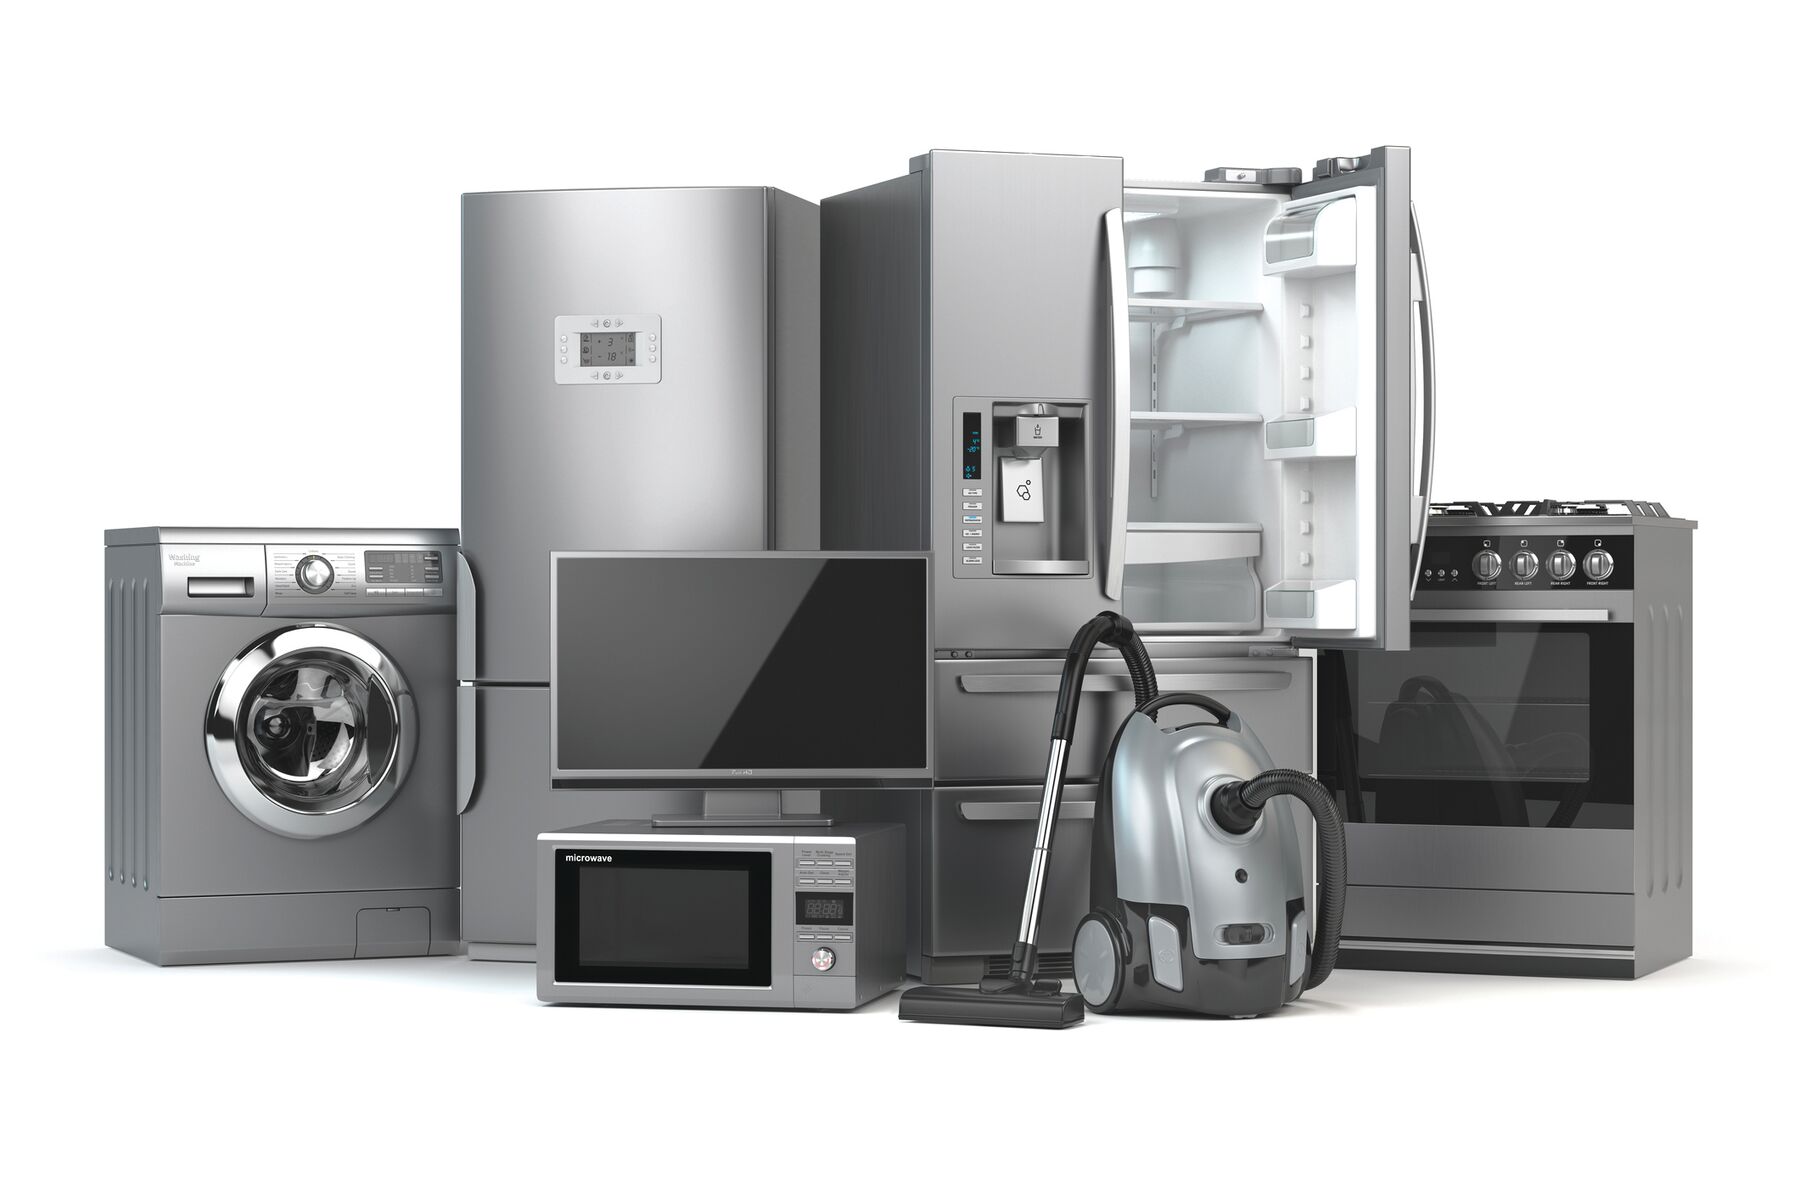 https://www.homeserve.com/en-us/assets/images/home-warranty/Appliances_Image1.jpg